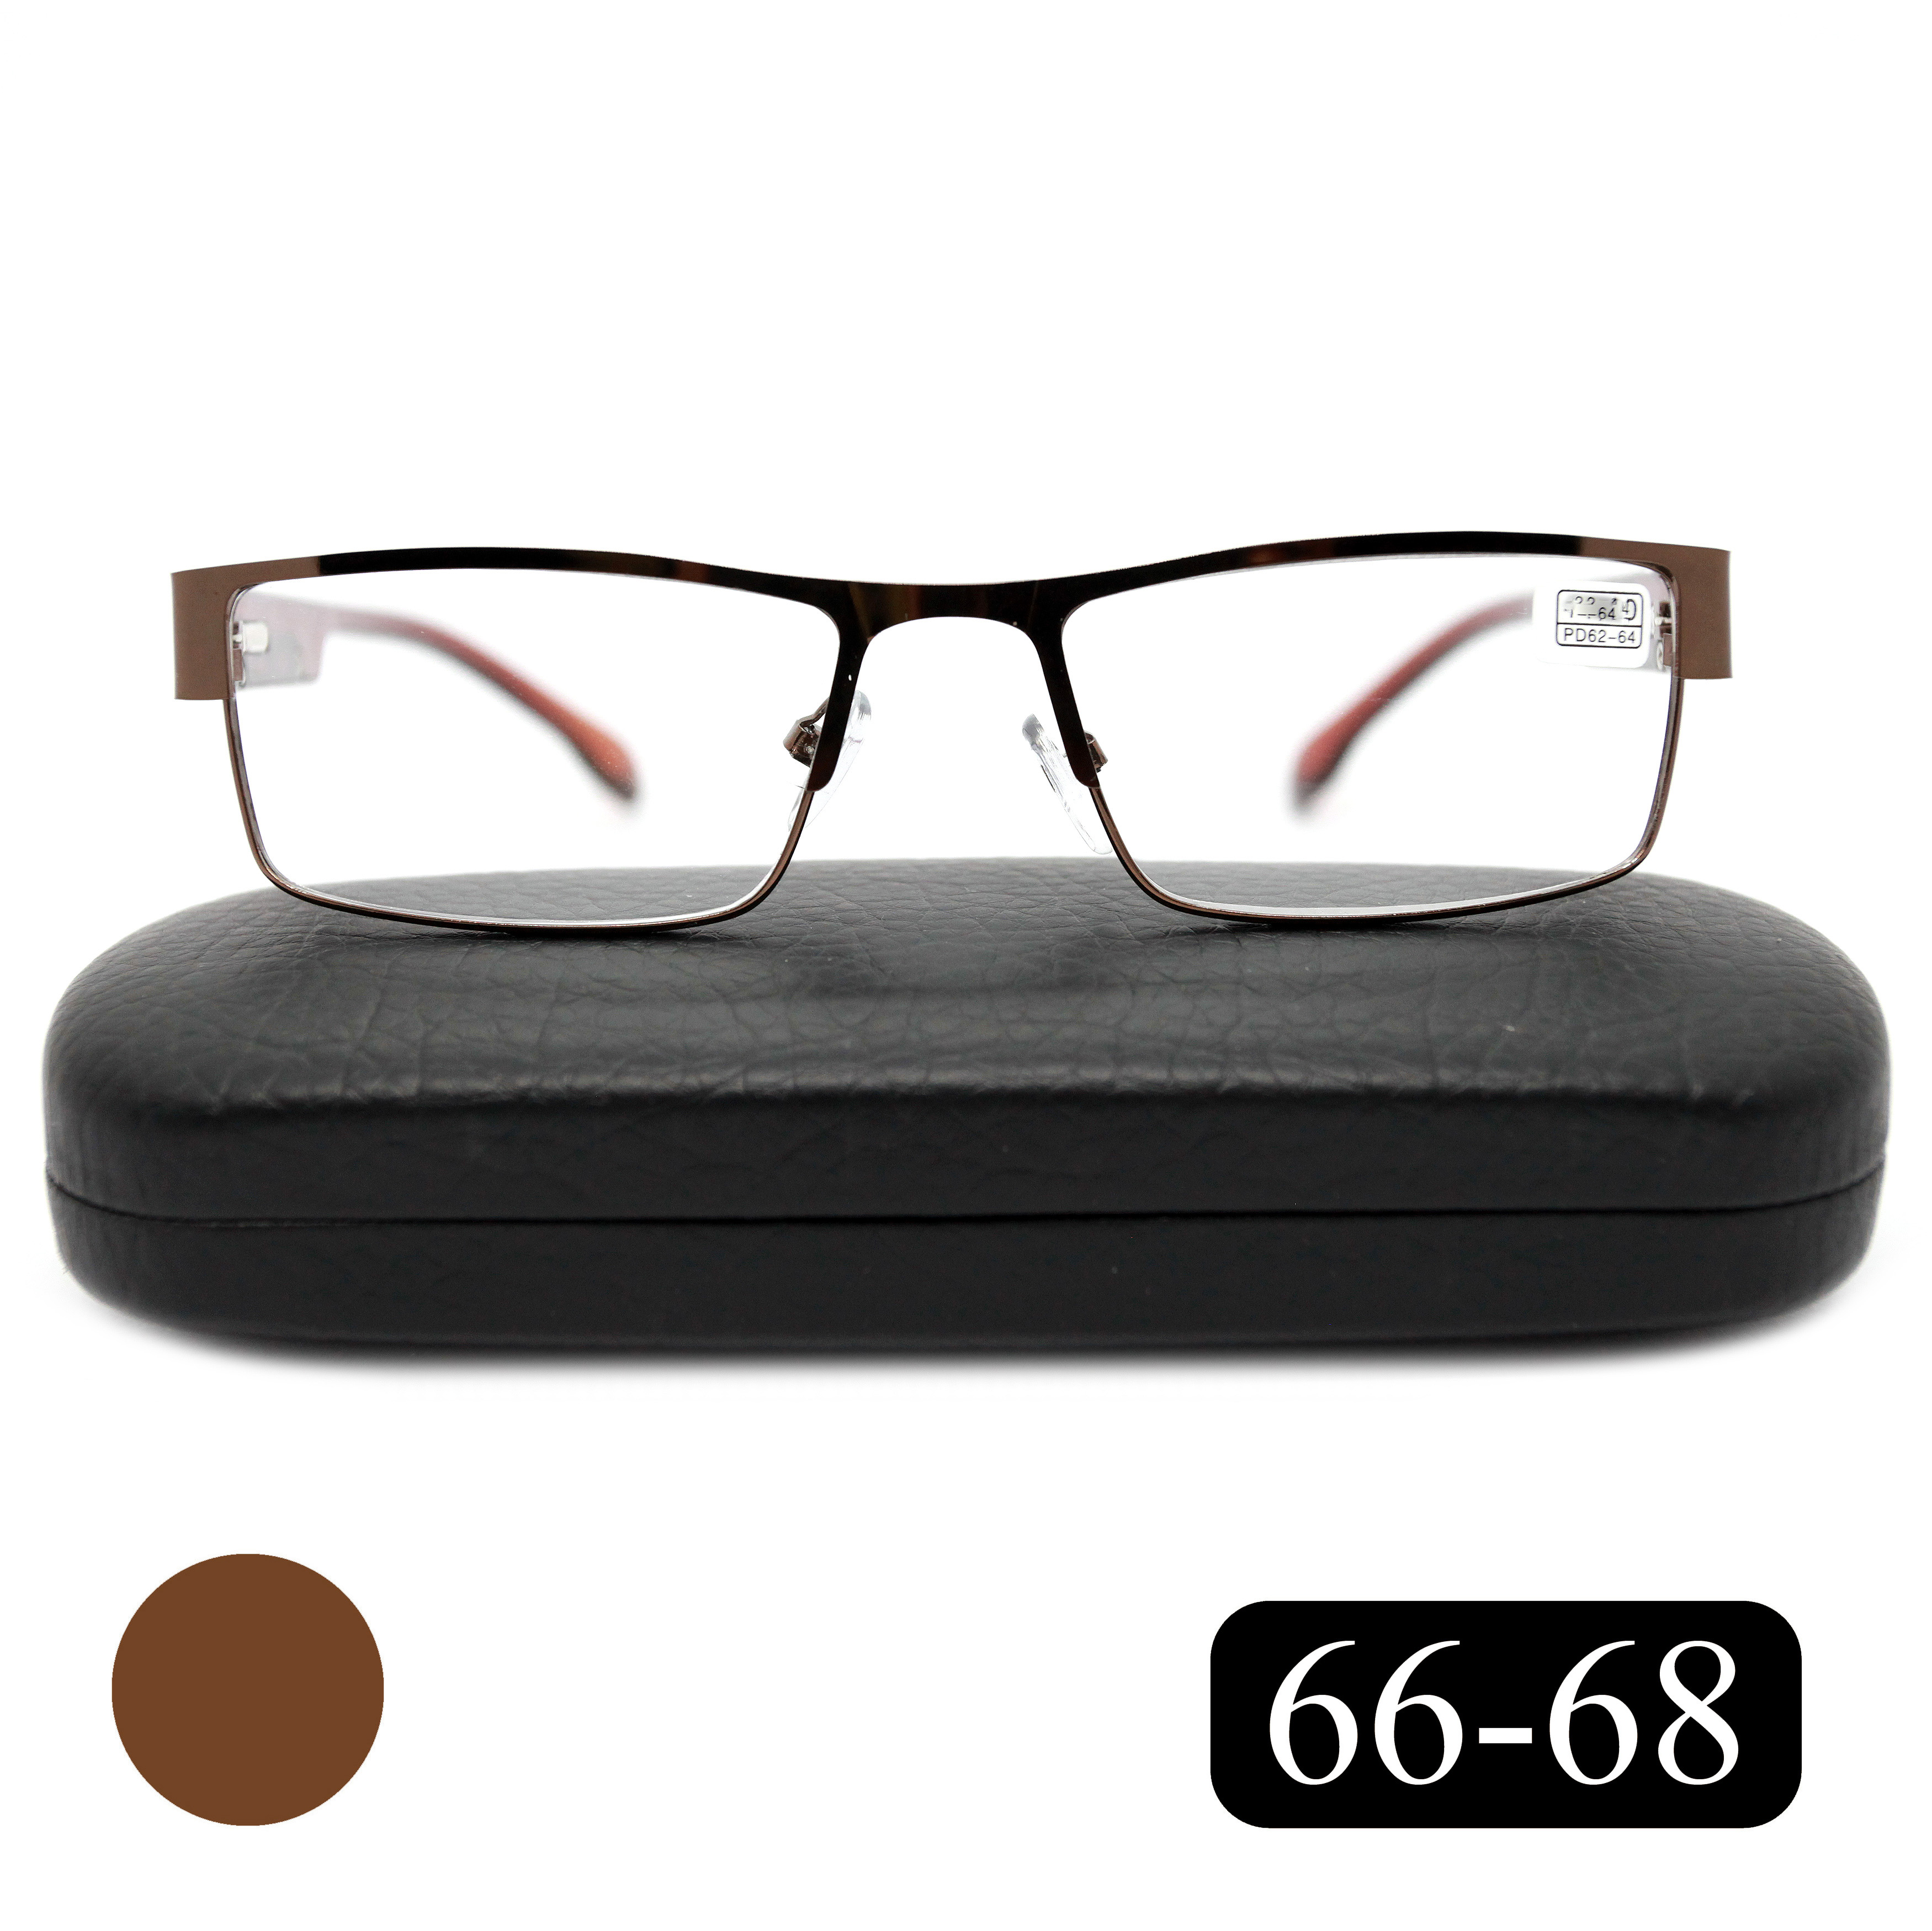 Готовые очки MOCT 019 +3,75, для чтения, c футляром, коричневый, РЦ 66-68